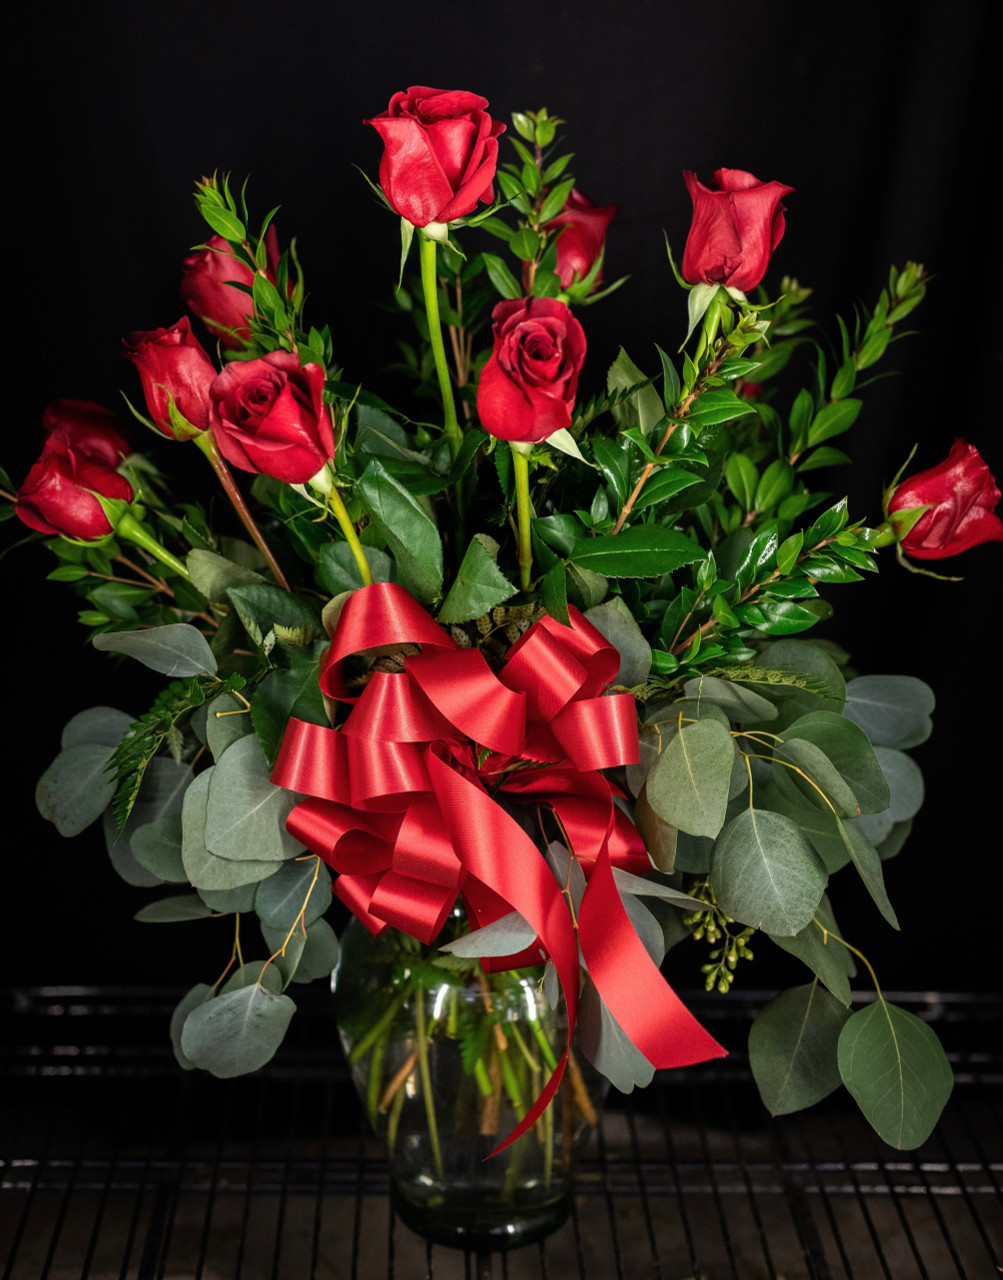 Dozen Red Rose Bouquet